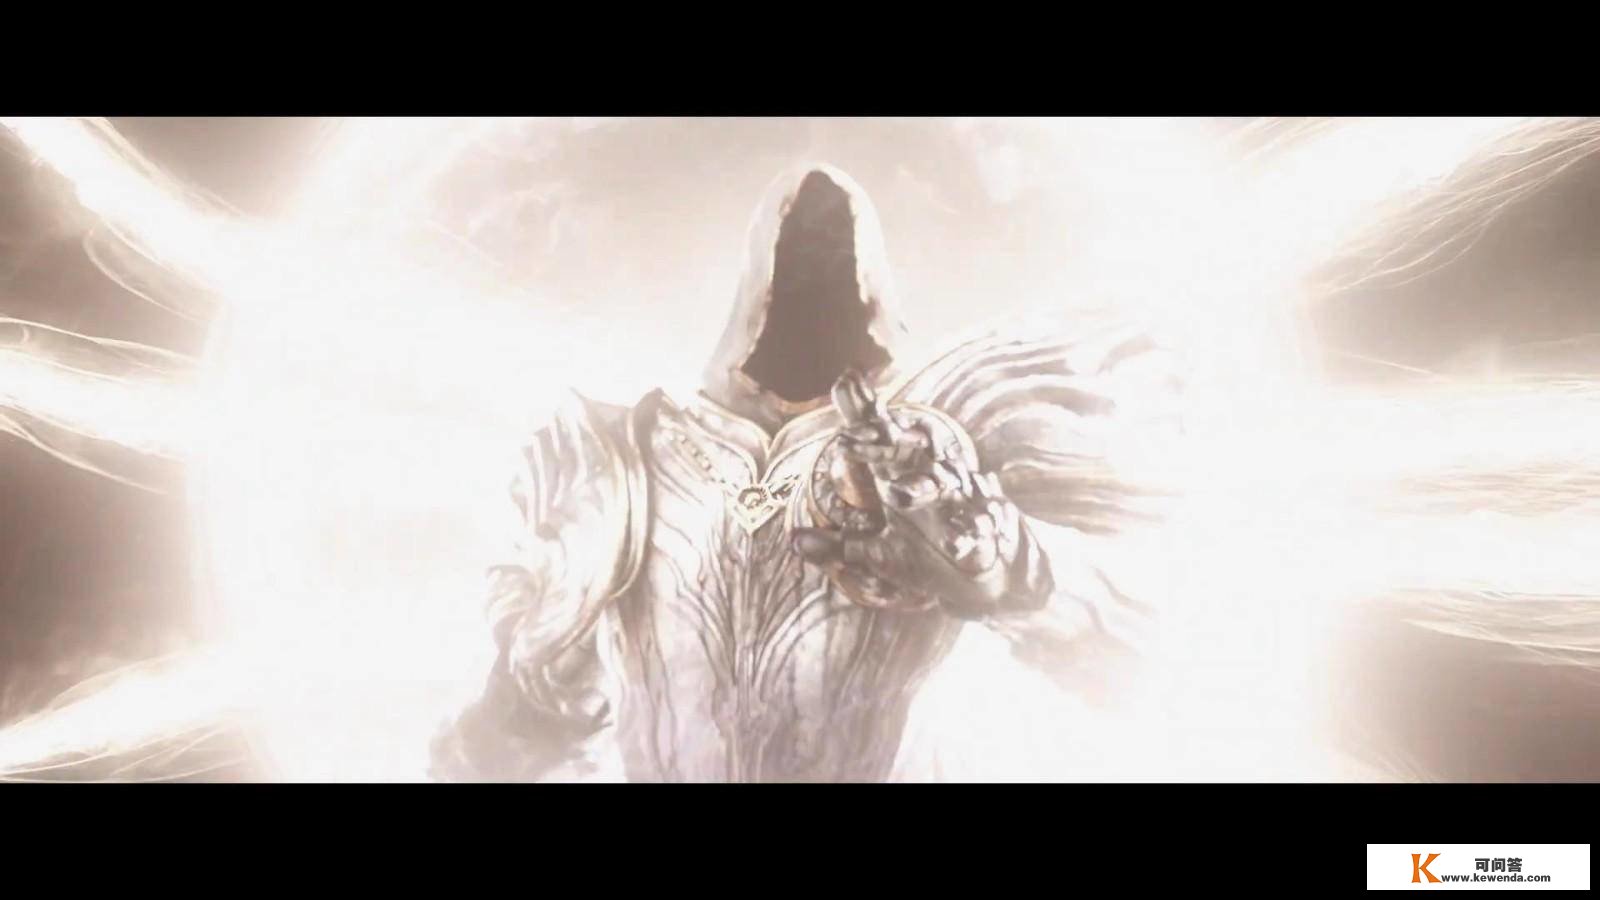 《暗黑毁坏神4》中文预告 周末免费体验暗黑天堂世界